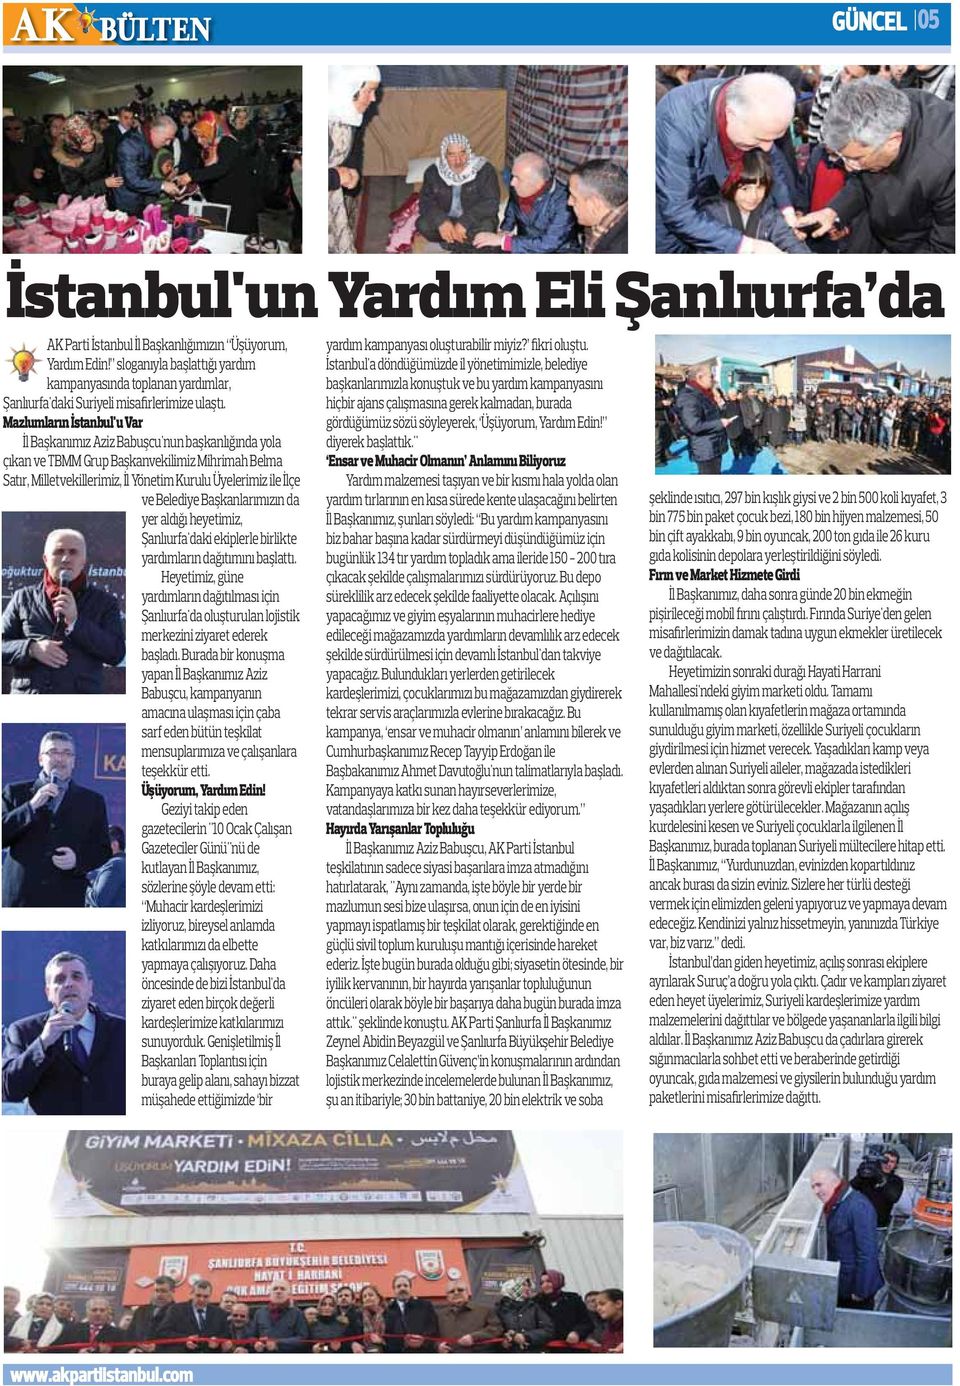 Mazlumların İstanbul'u Var İl Başkanımız Aziz Babuşcu'nun başkanlığında yola çıkan ve TBMM Grup Başkanvekilimiz Mihrimah Belma Satır, Milletvekillerimiz, İl Yönetim Kurulu Üyelerimiz ile İlçe ve